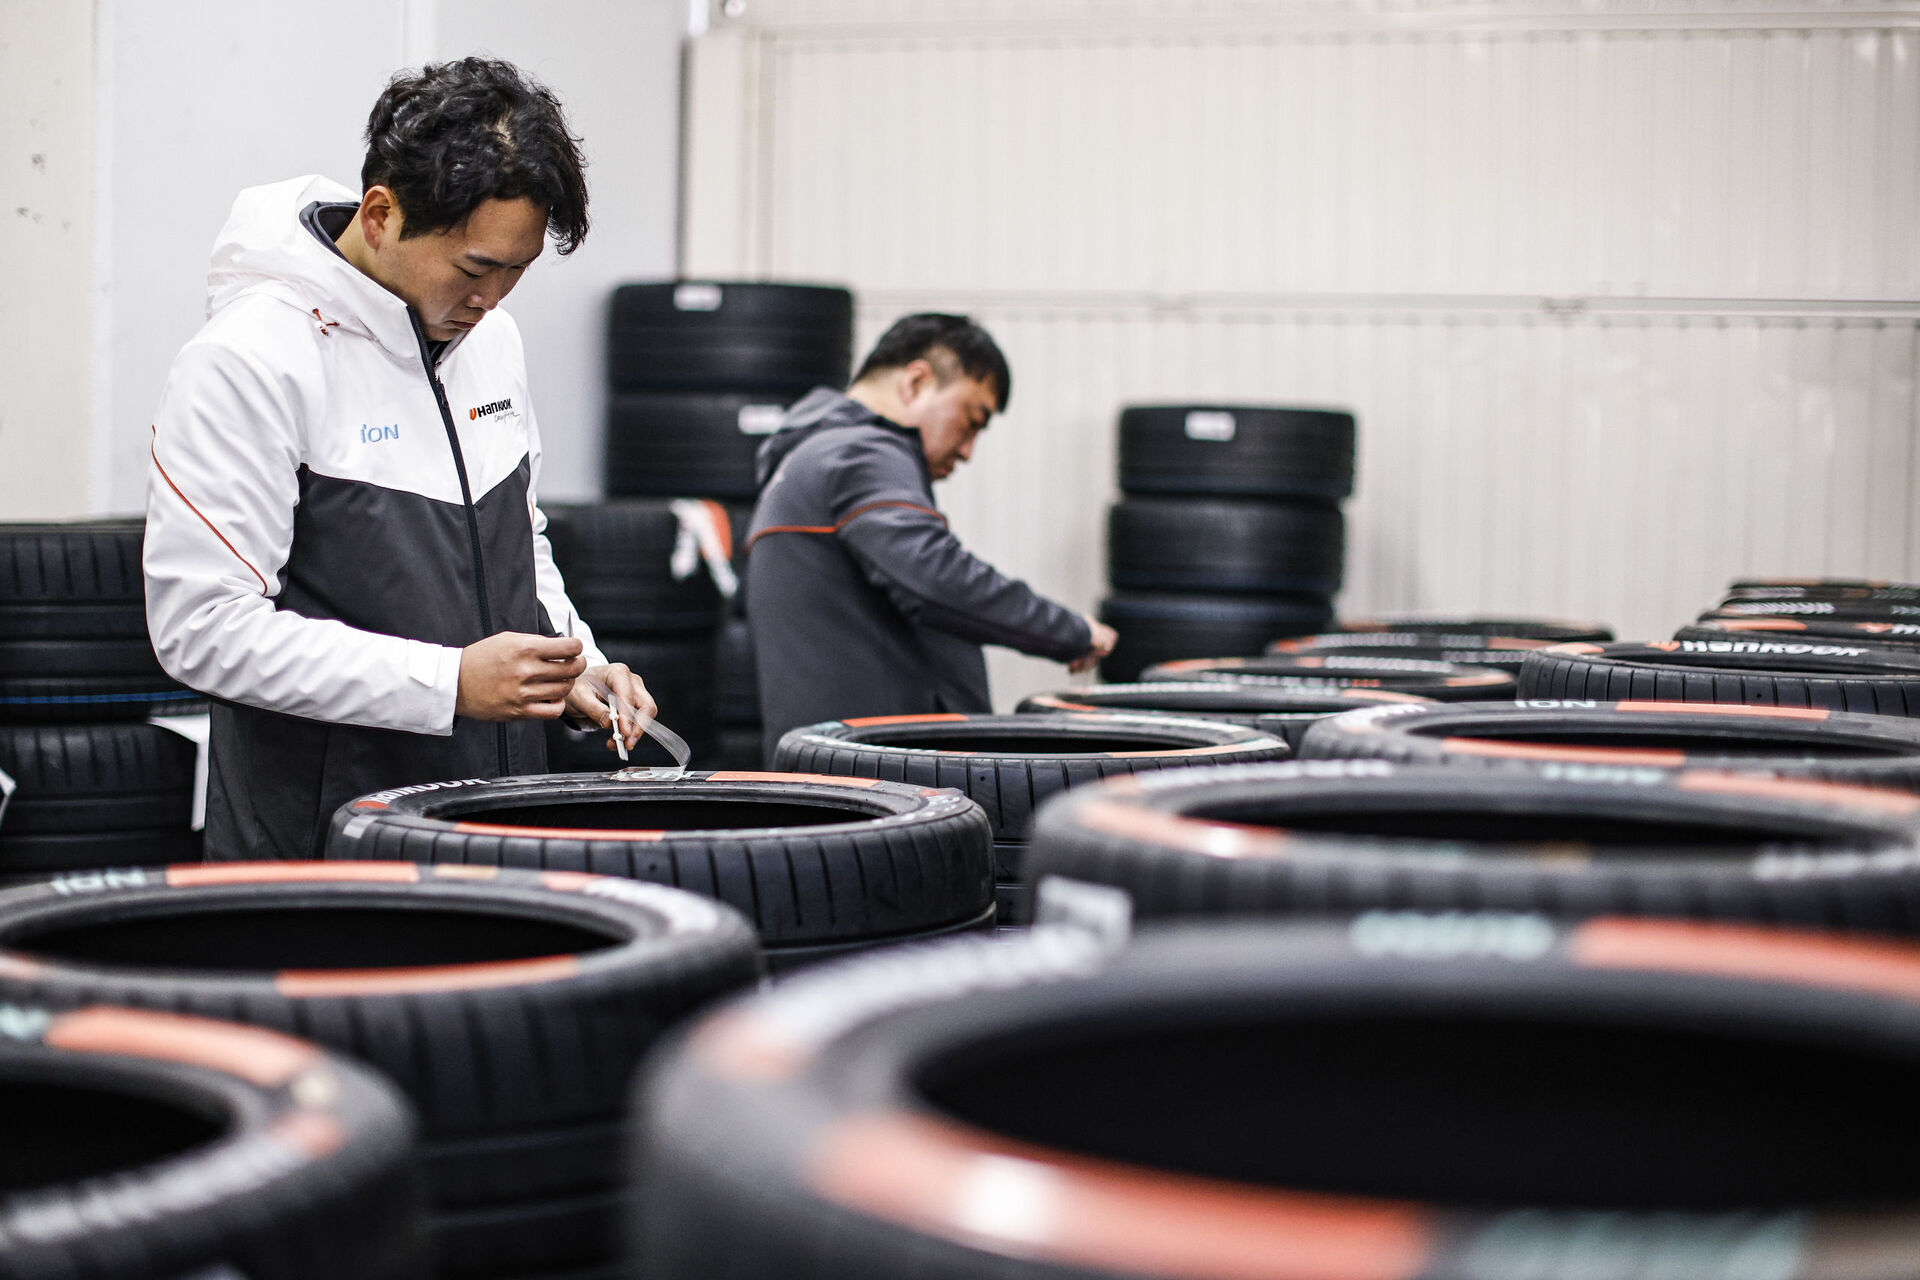 Hankook - vývoj pneumatik pro Formuli E